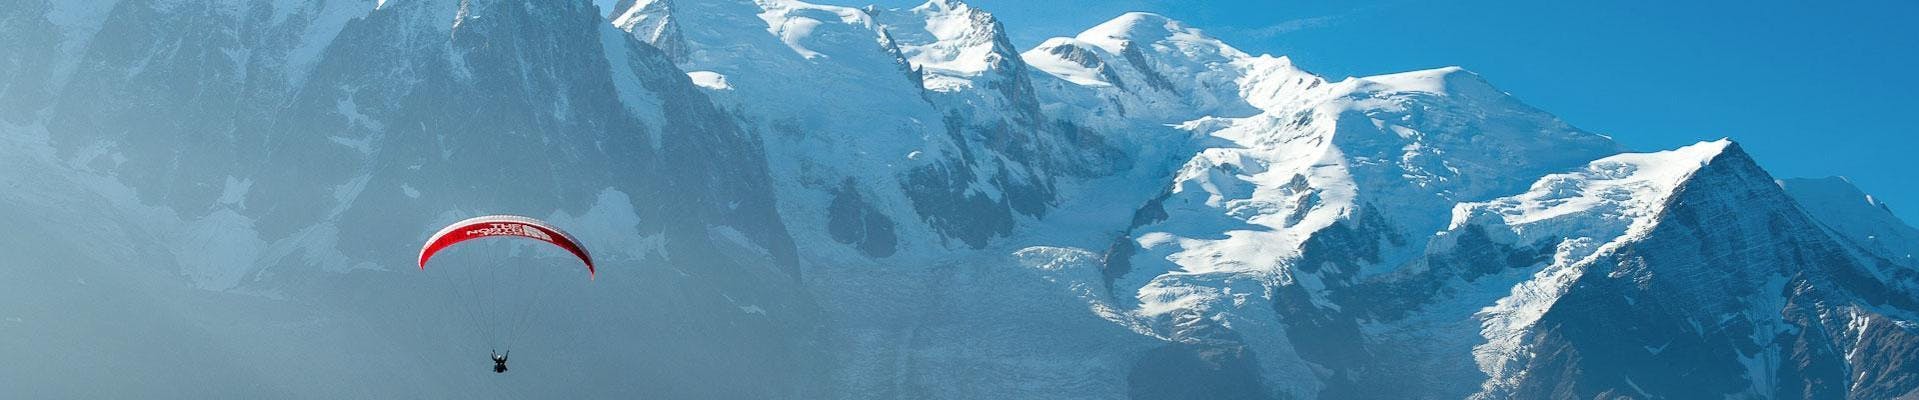 Parapente biplaza acrobÃ¡tico en Chamonix (a partir de 12 años) - Plan de l'Aiguille.